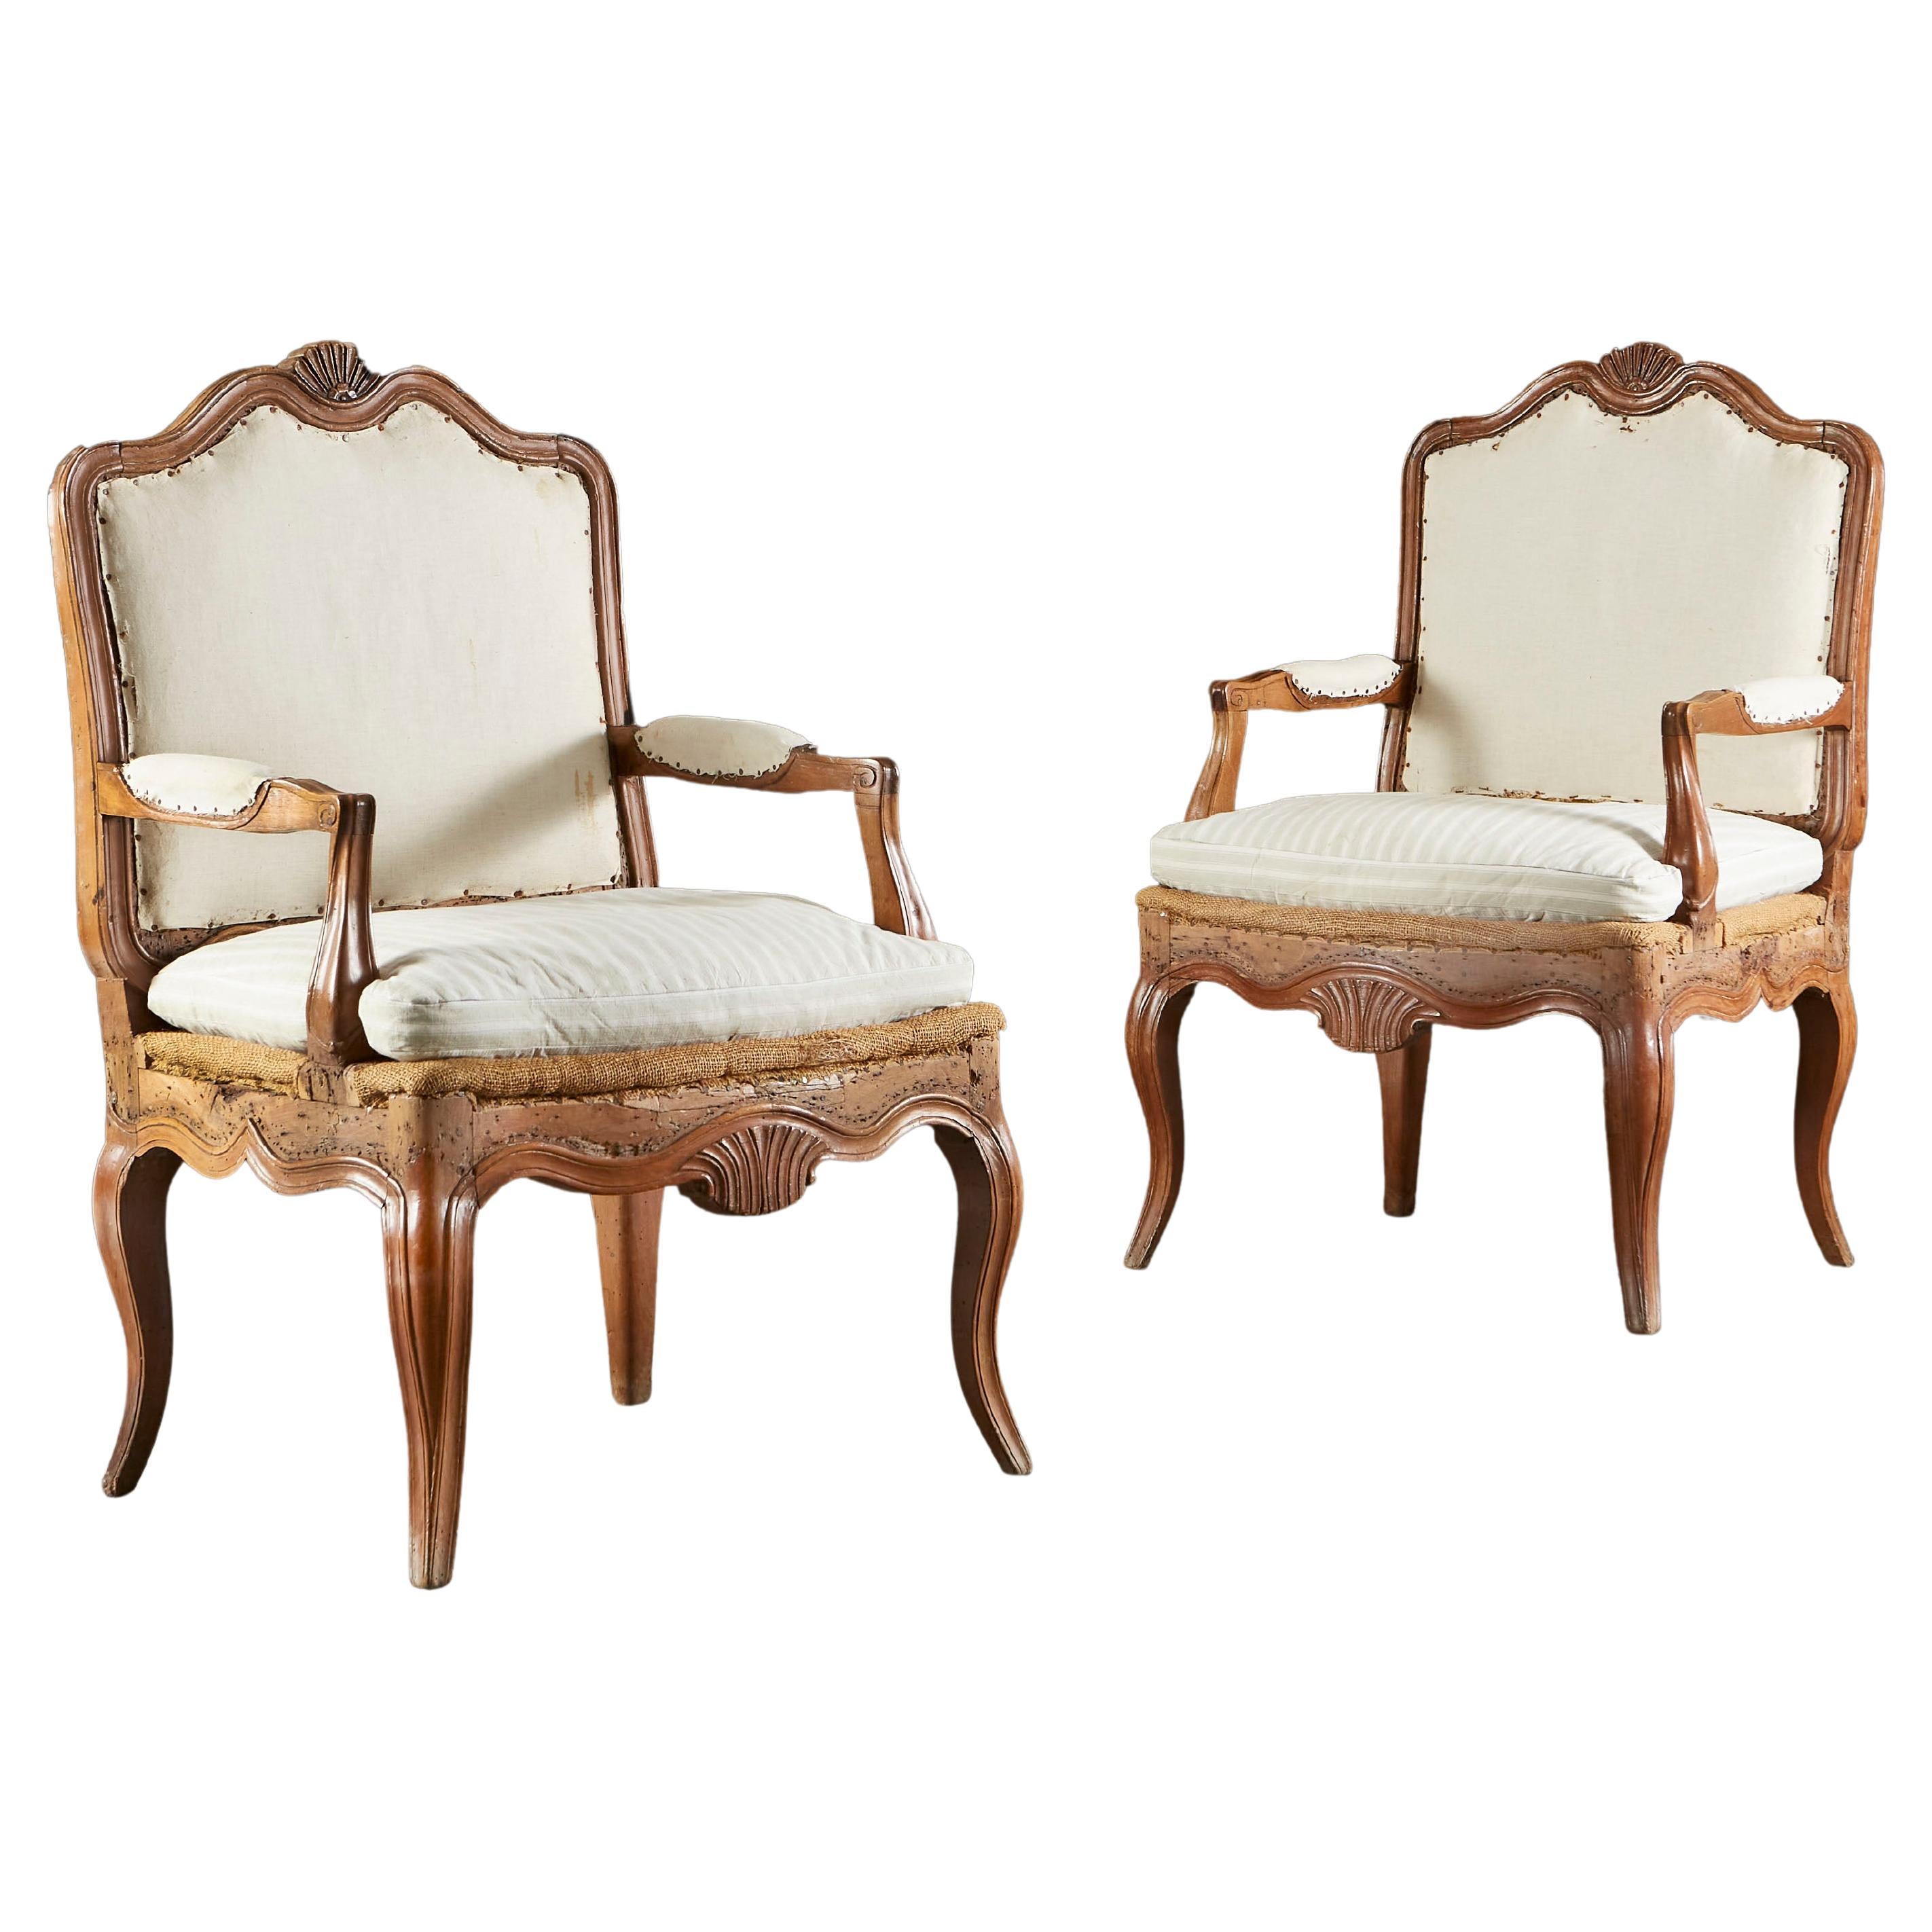 Paire de fauteuils ouverts français du début du XIXe siècle